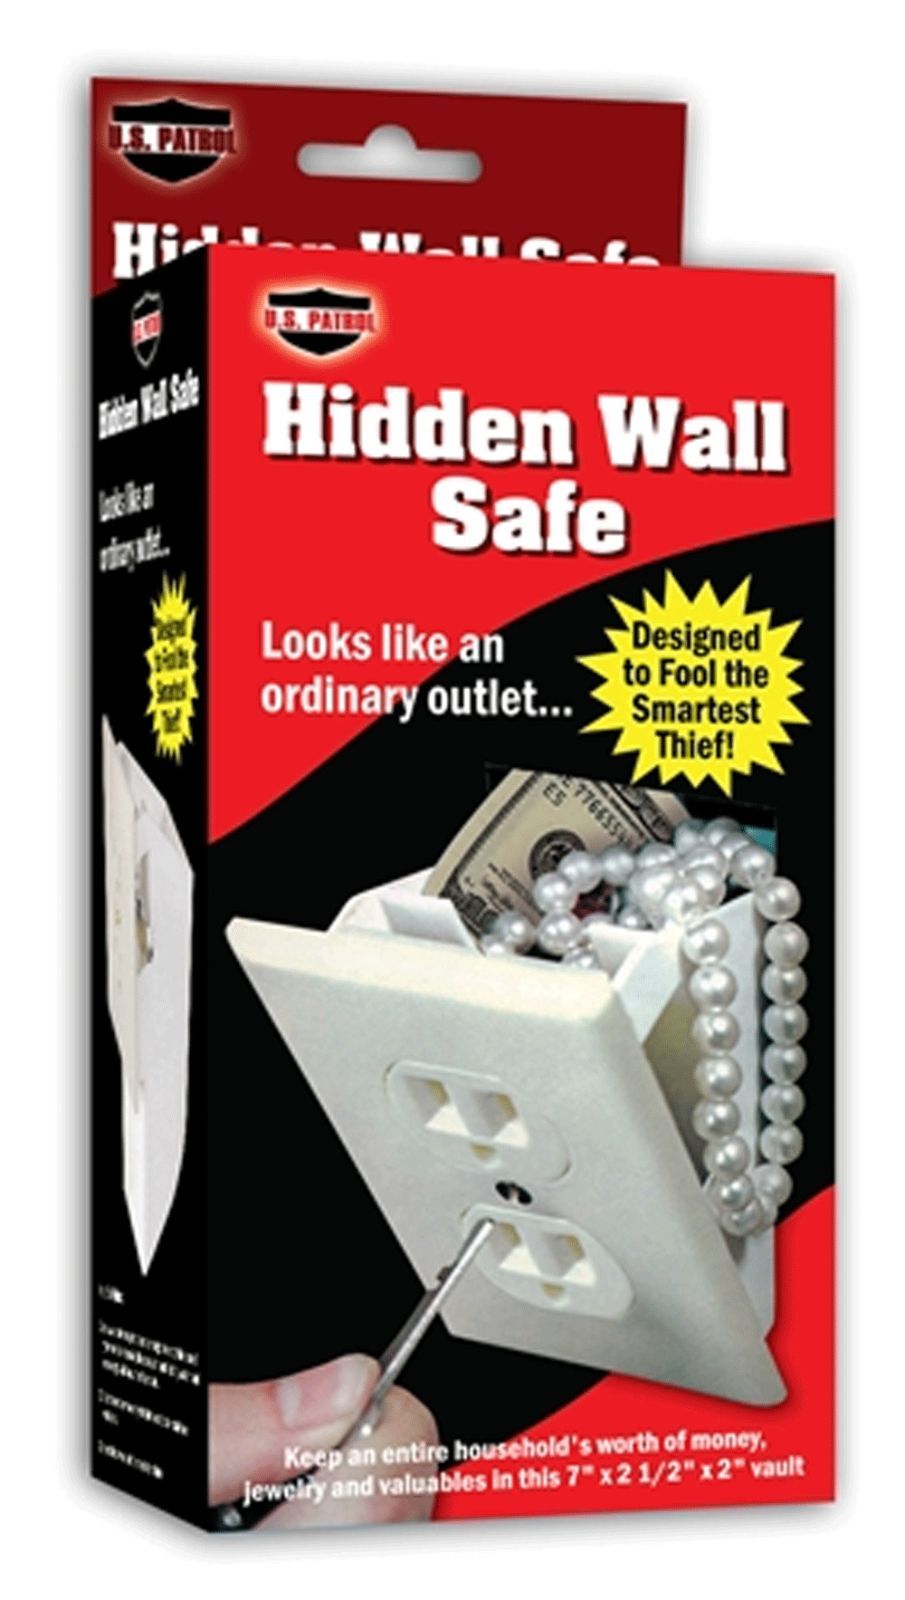 Hidden Wall Safe Security Electrical Outlet Keys Vault Secret Hide Valuables